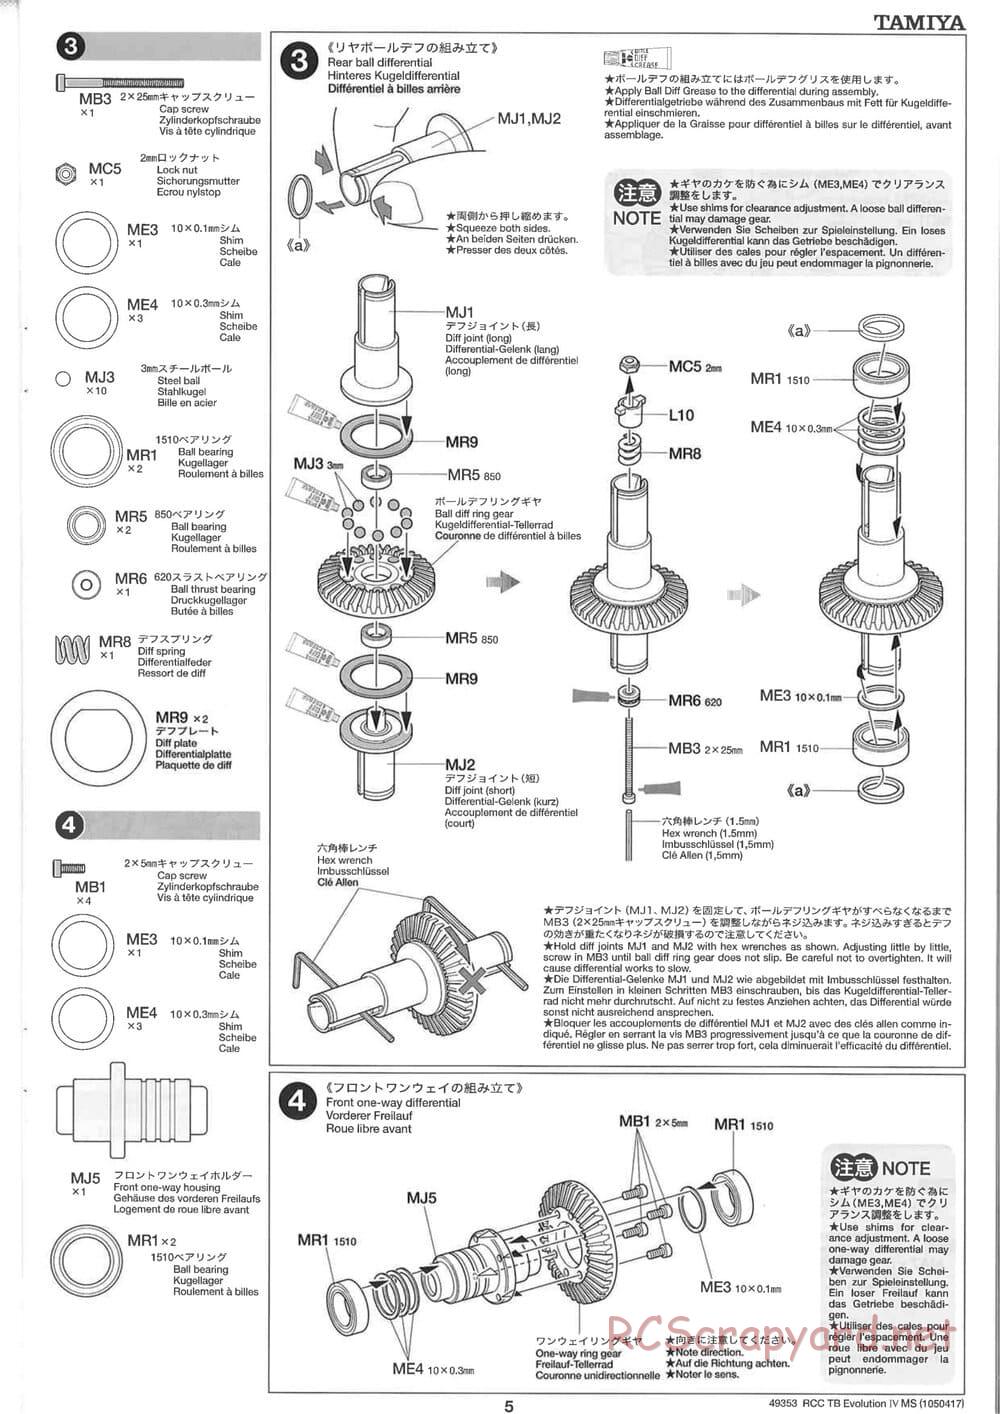 Tamiya - TB Evolution IV MS Chassis - Manual - Page 5